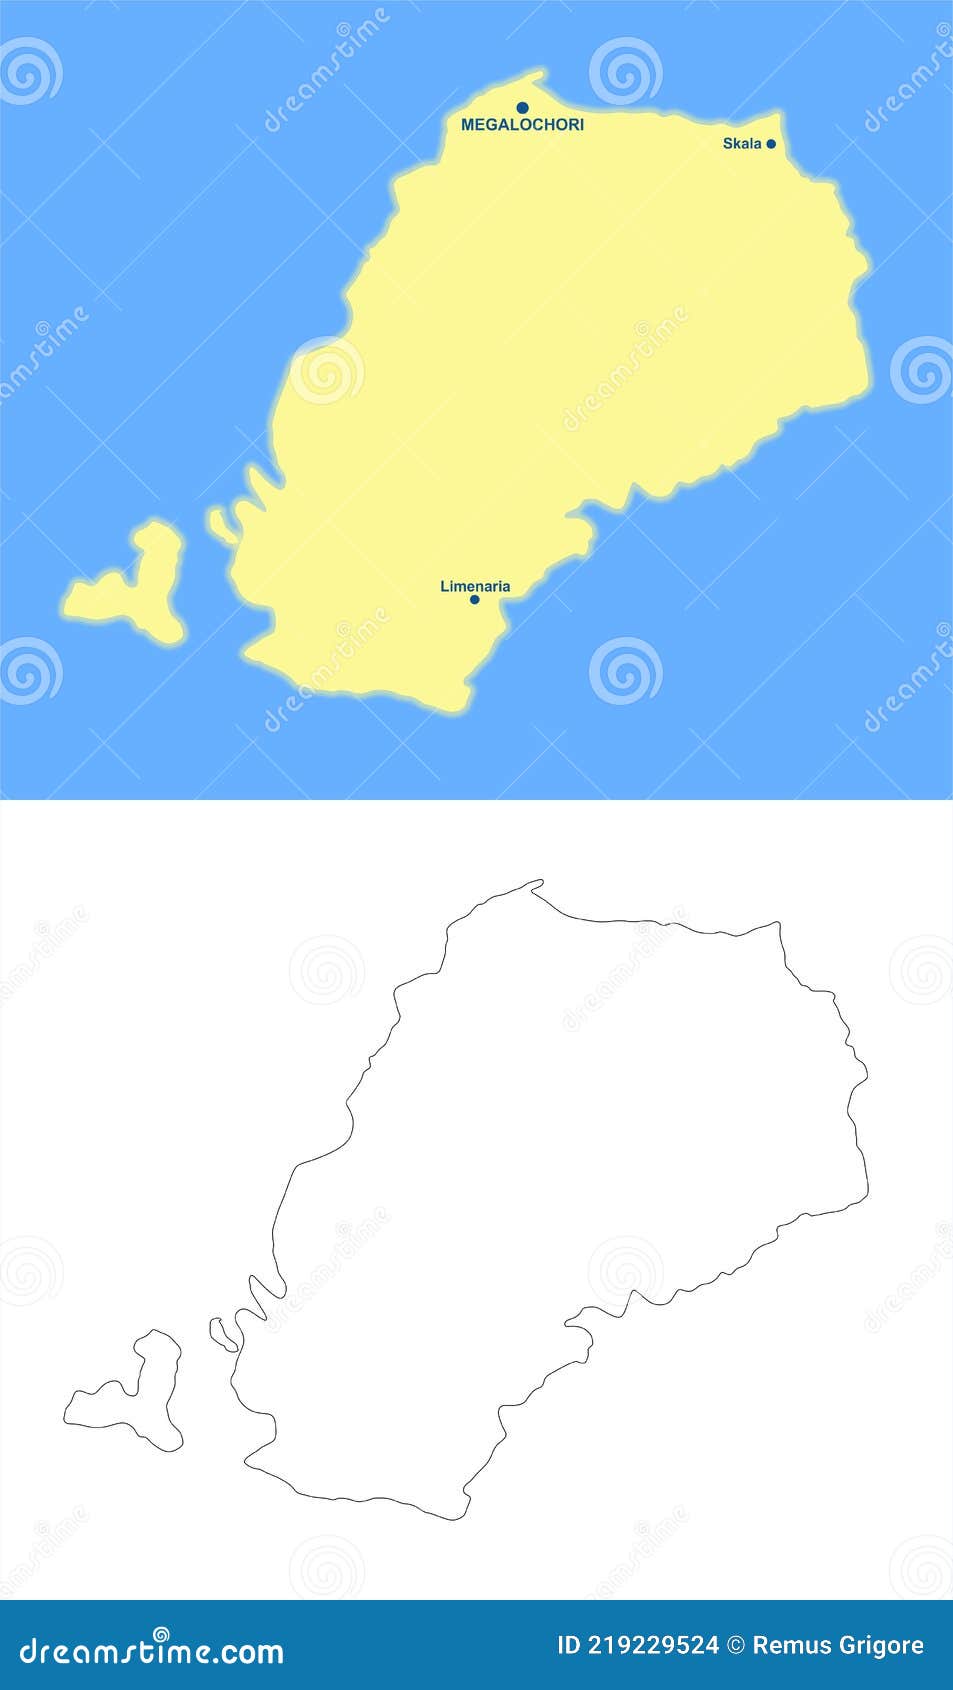 Agistri Island Map Agistri Island Map Vector Main Towns Villages 219229524 